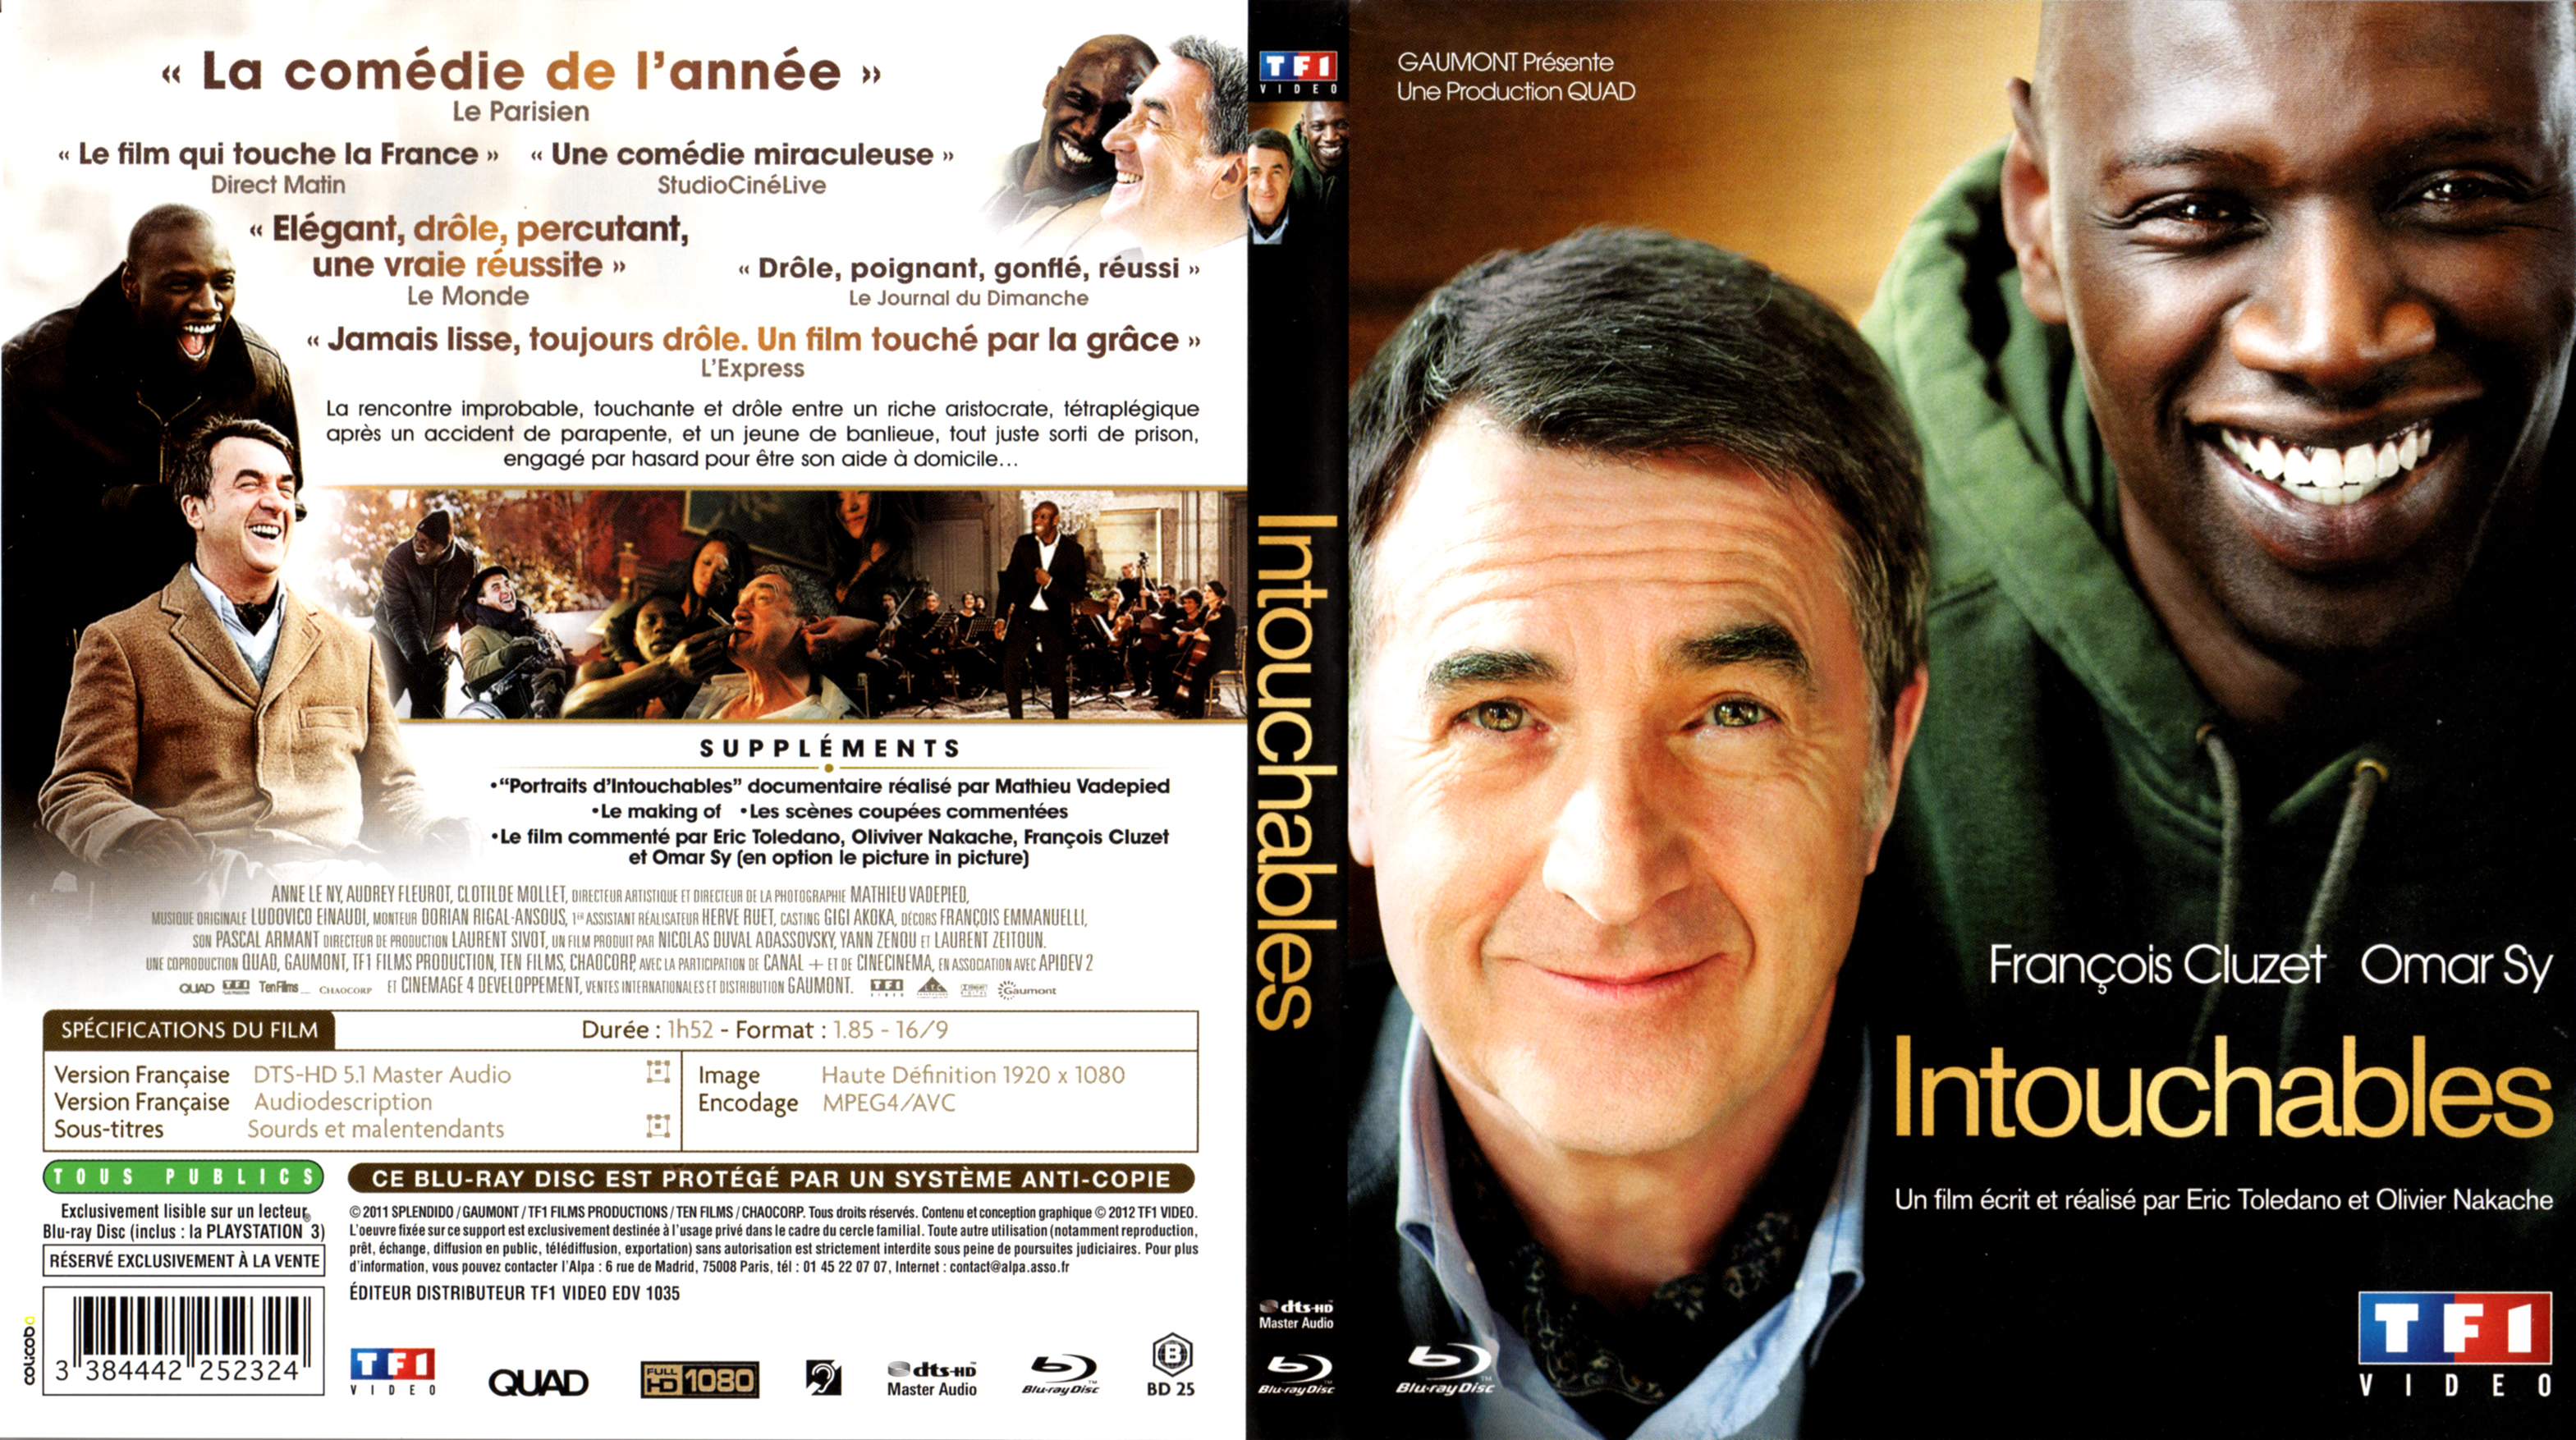 Jaquette DVD de Intouchables (BLU-RAY) - Cinéma Passion